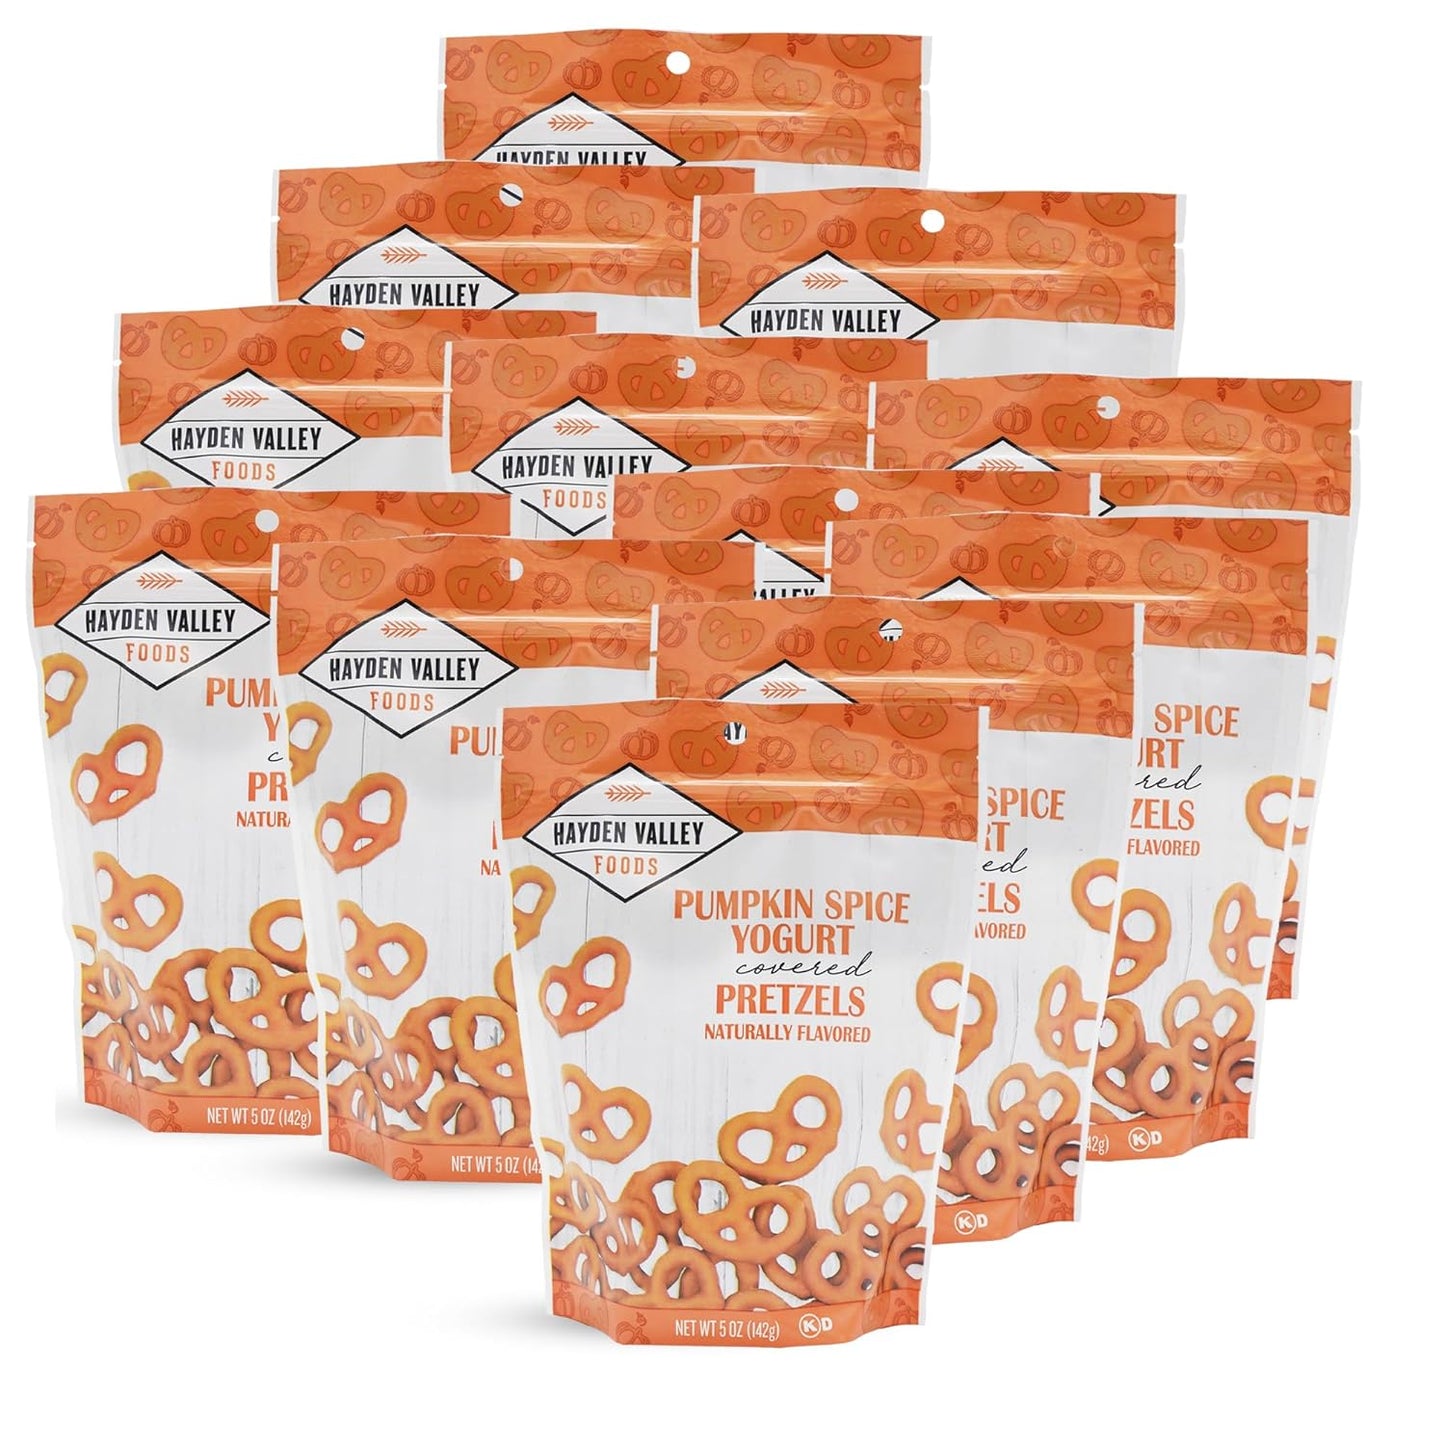 Hayden Valley Foods Yogurt Covered Pretzels - 5 oz Resealable Bags - Gourmet Flavored Pretzels